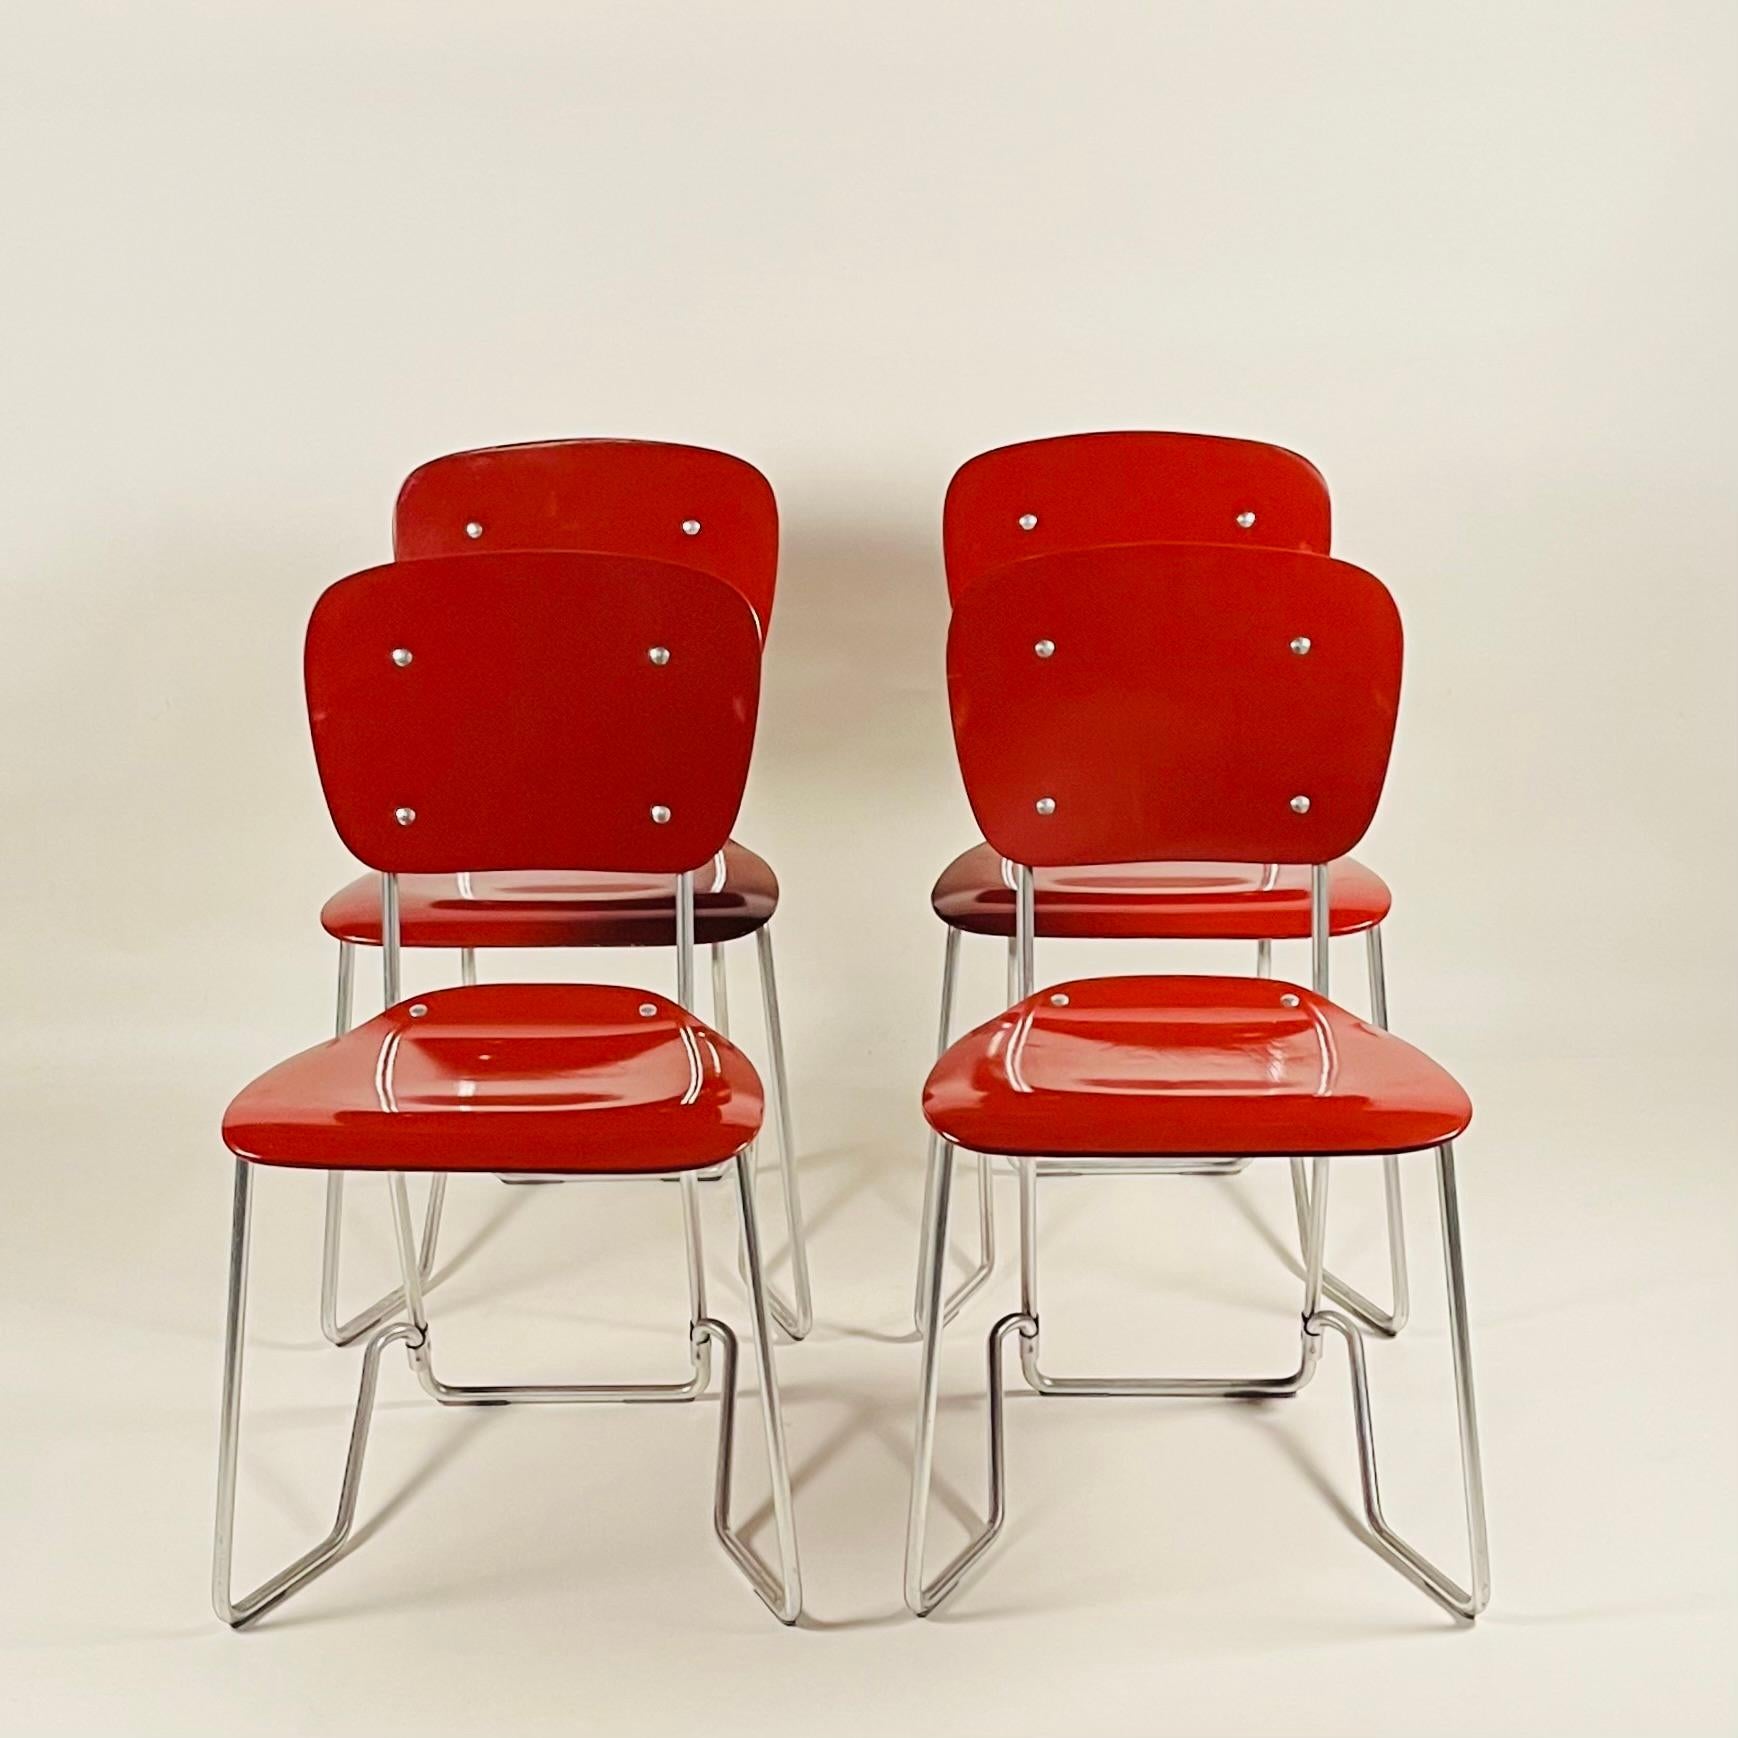 Chaises empilables en Aluflex conçues par Armin Wirth.
Fabriqué par Aluflex, Suisse, vers 1950.
